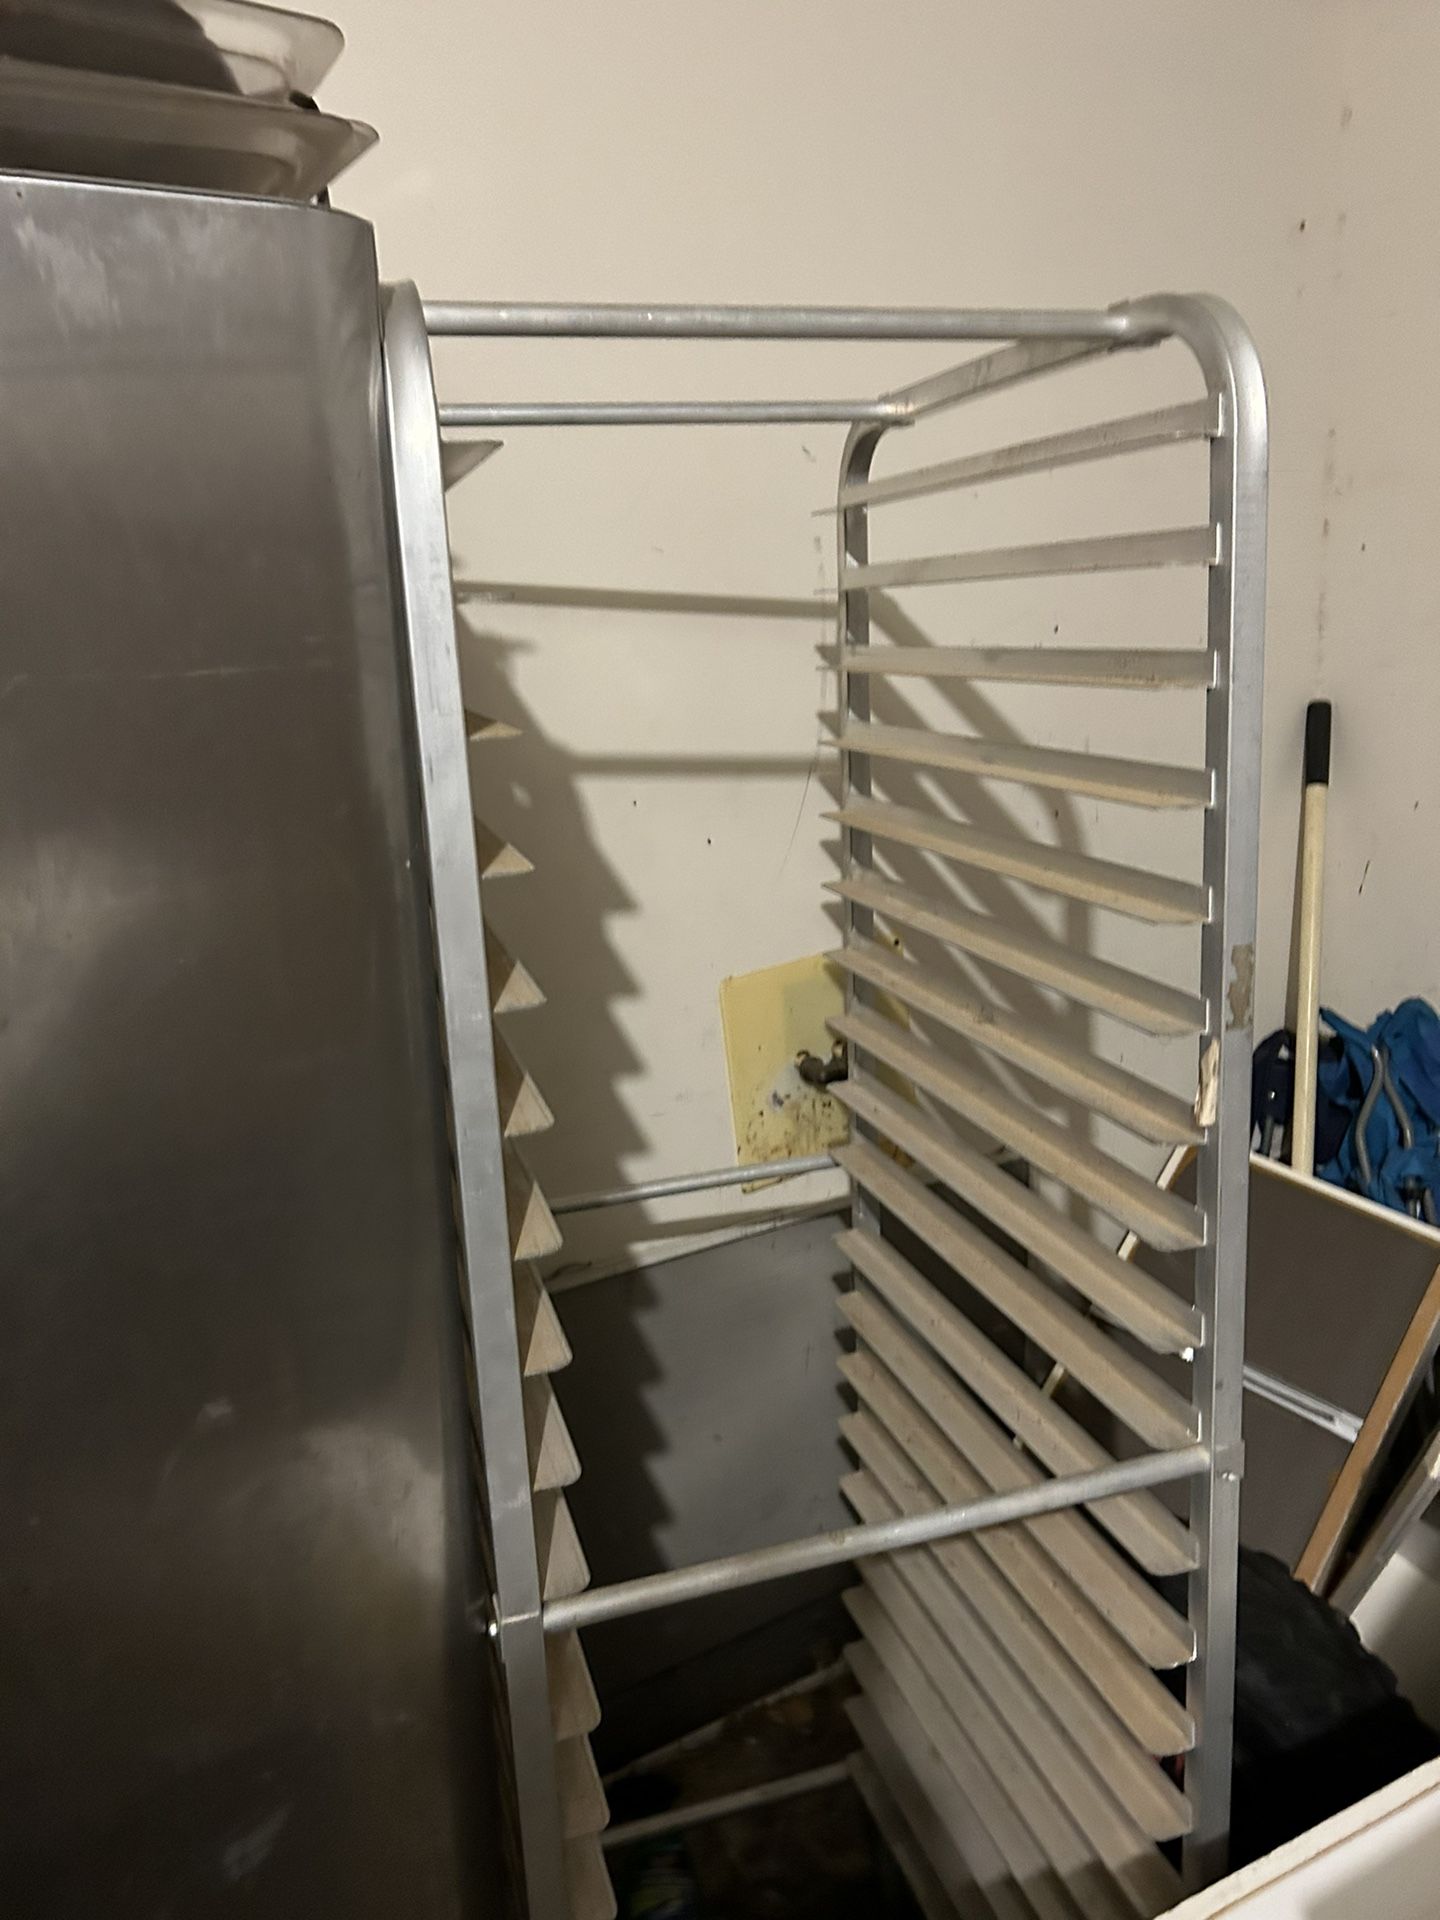 Aluminum 12 tier Bakers rack